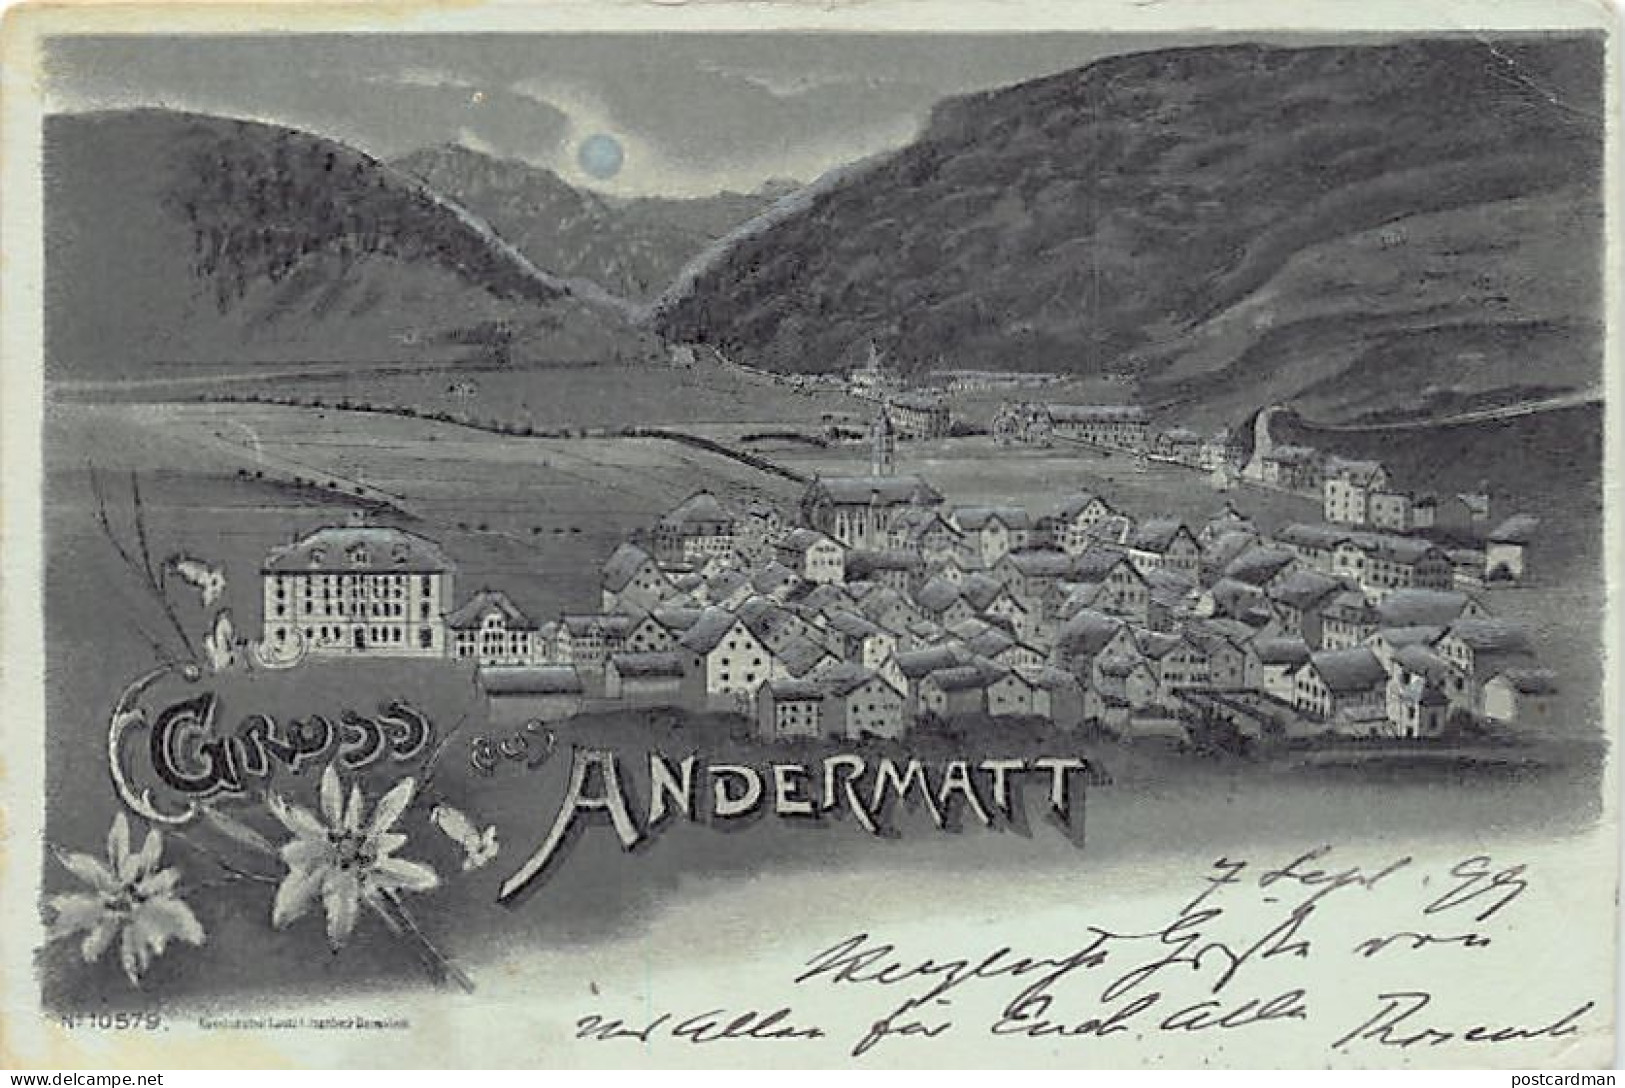 ANDERMATT (UR) Mondkarte - Gesamtansicht - Karte Leicht Beschädigt - Verlag Lautz & Isenbeck 10579 - Andermatt